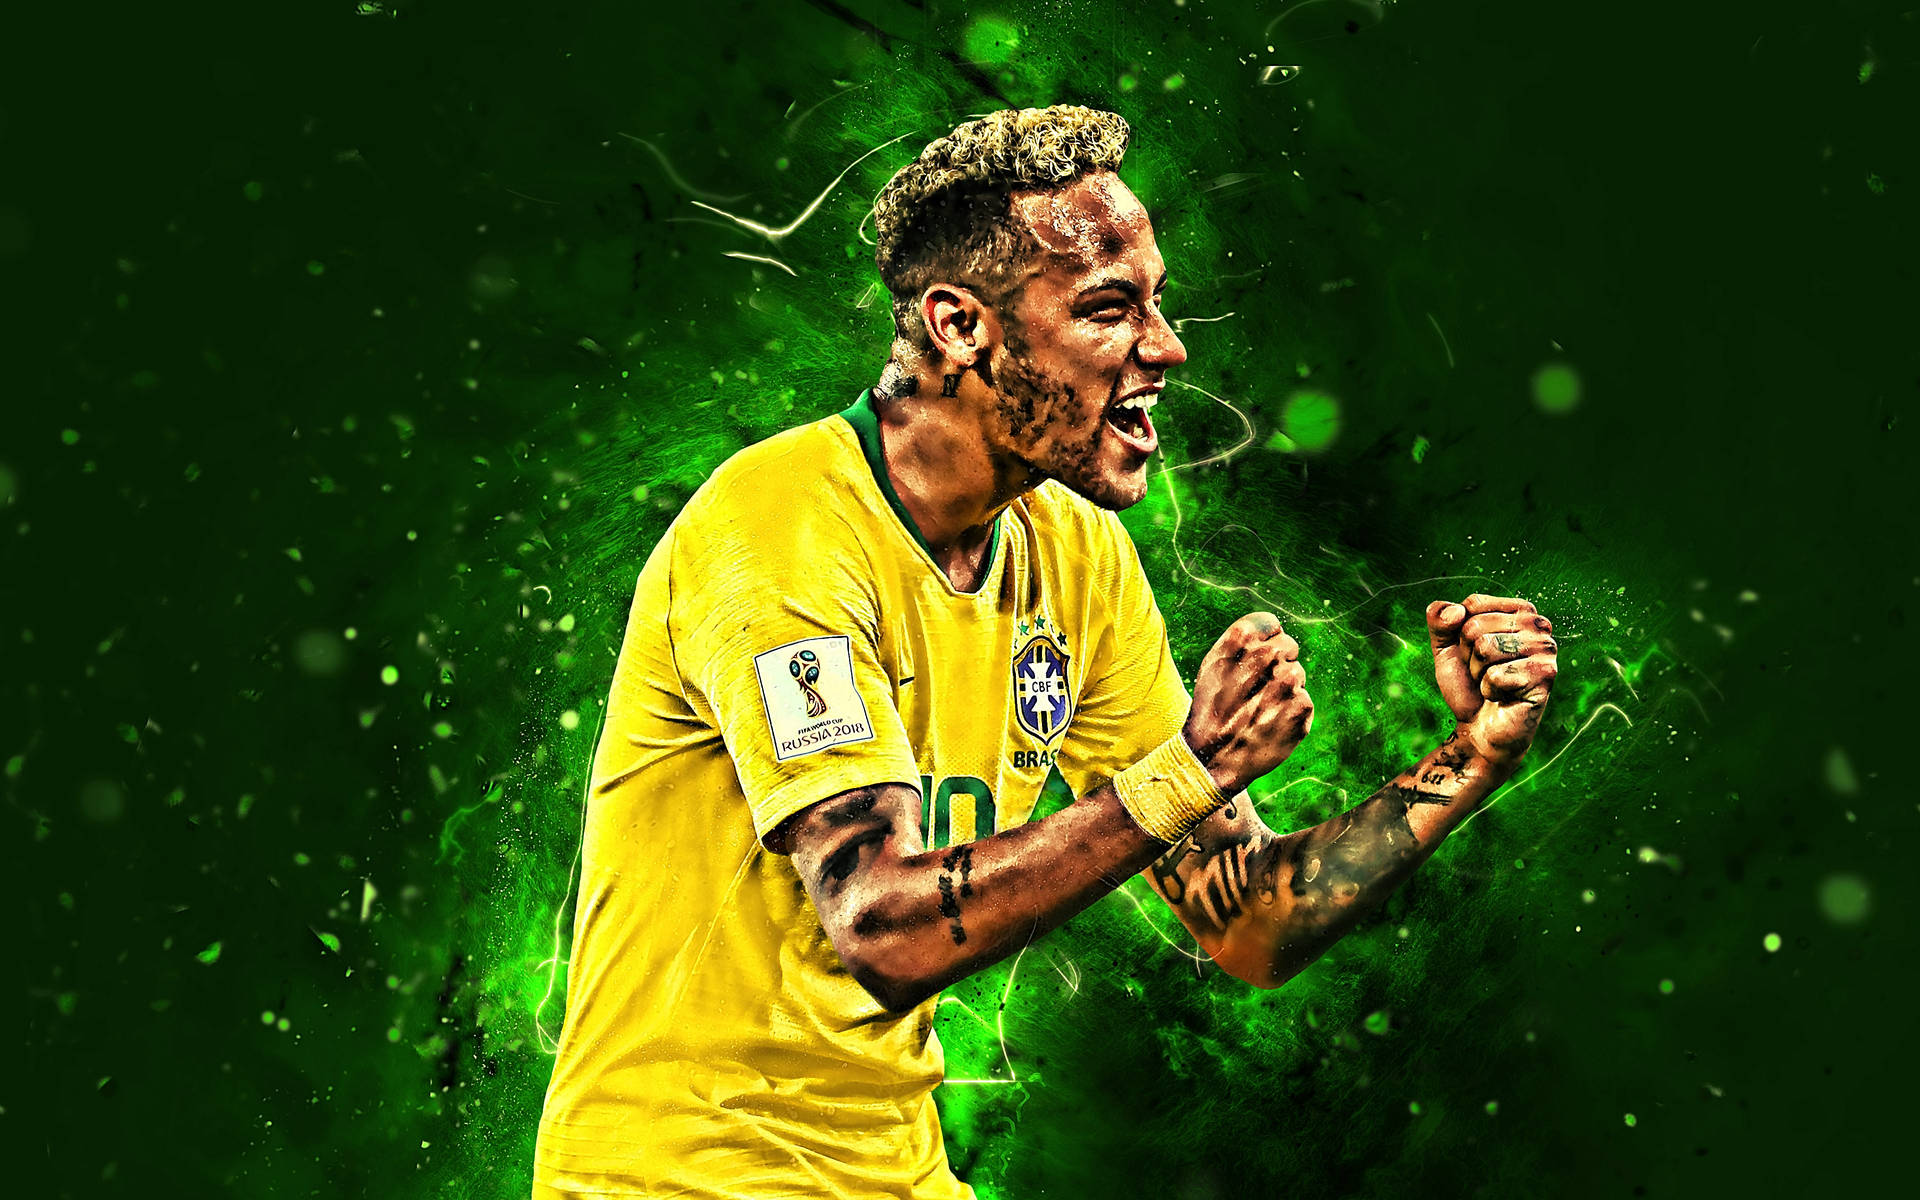 Fanart Of Neymar Jr In Yellow